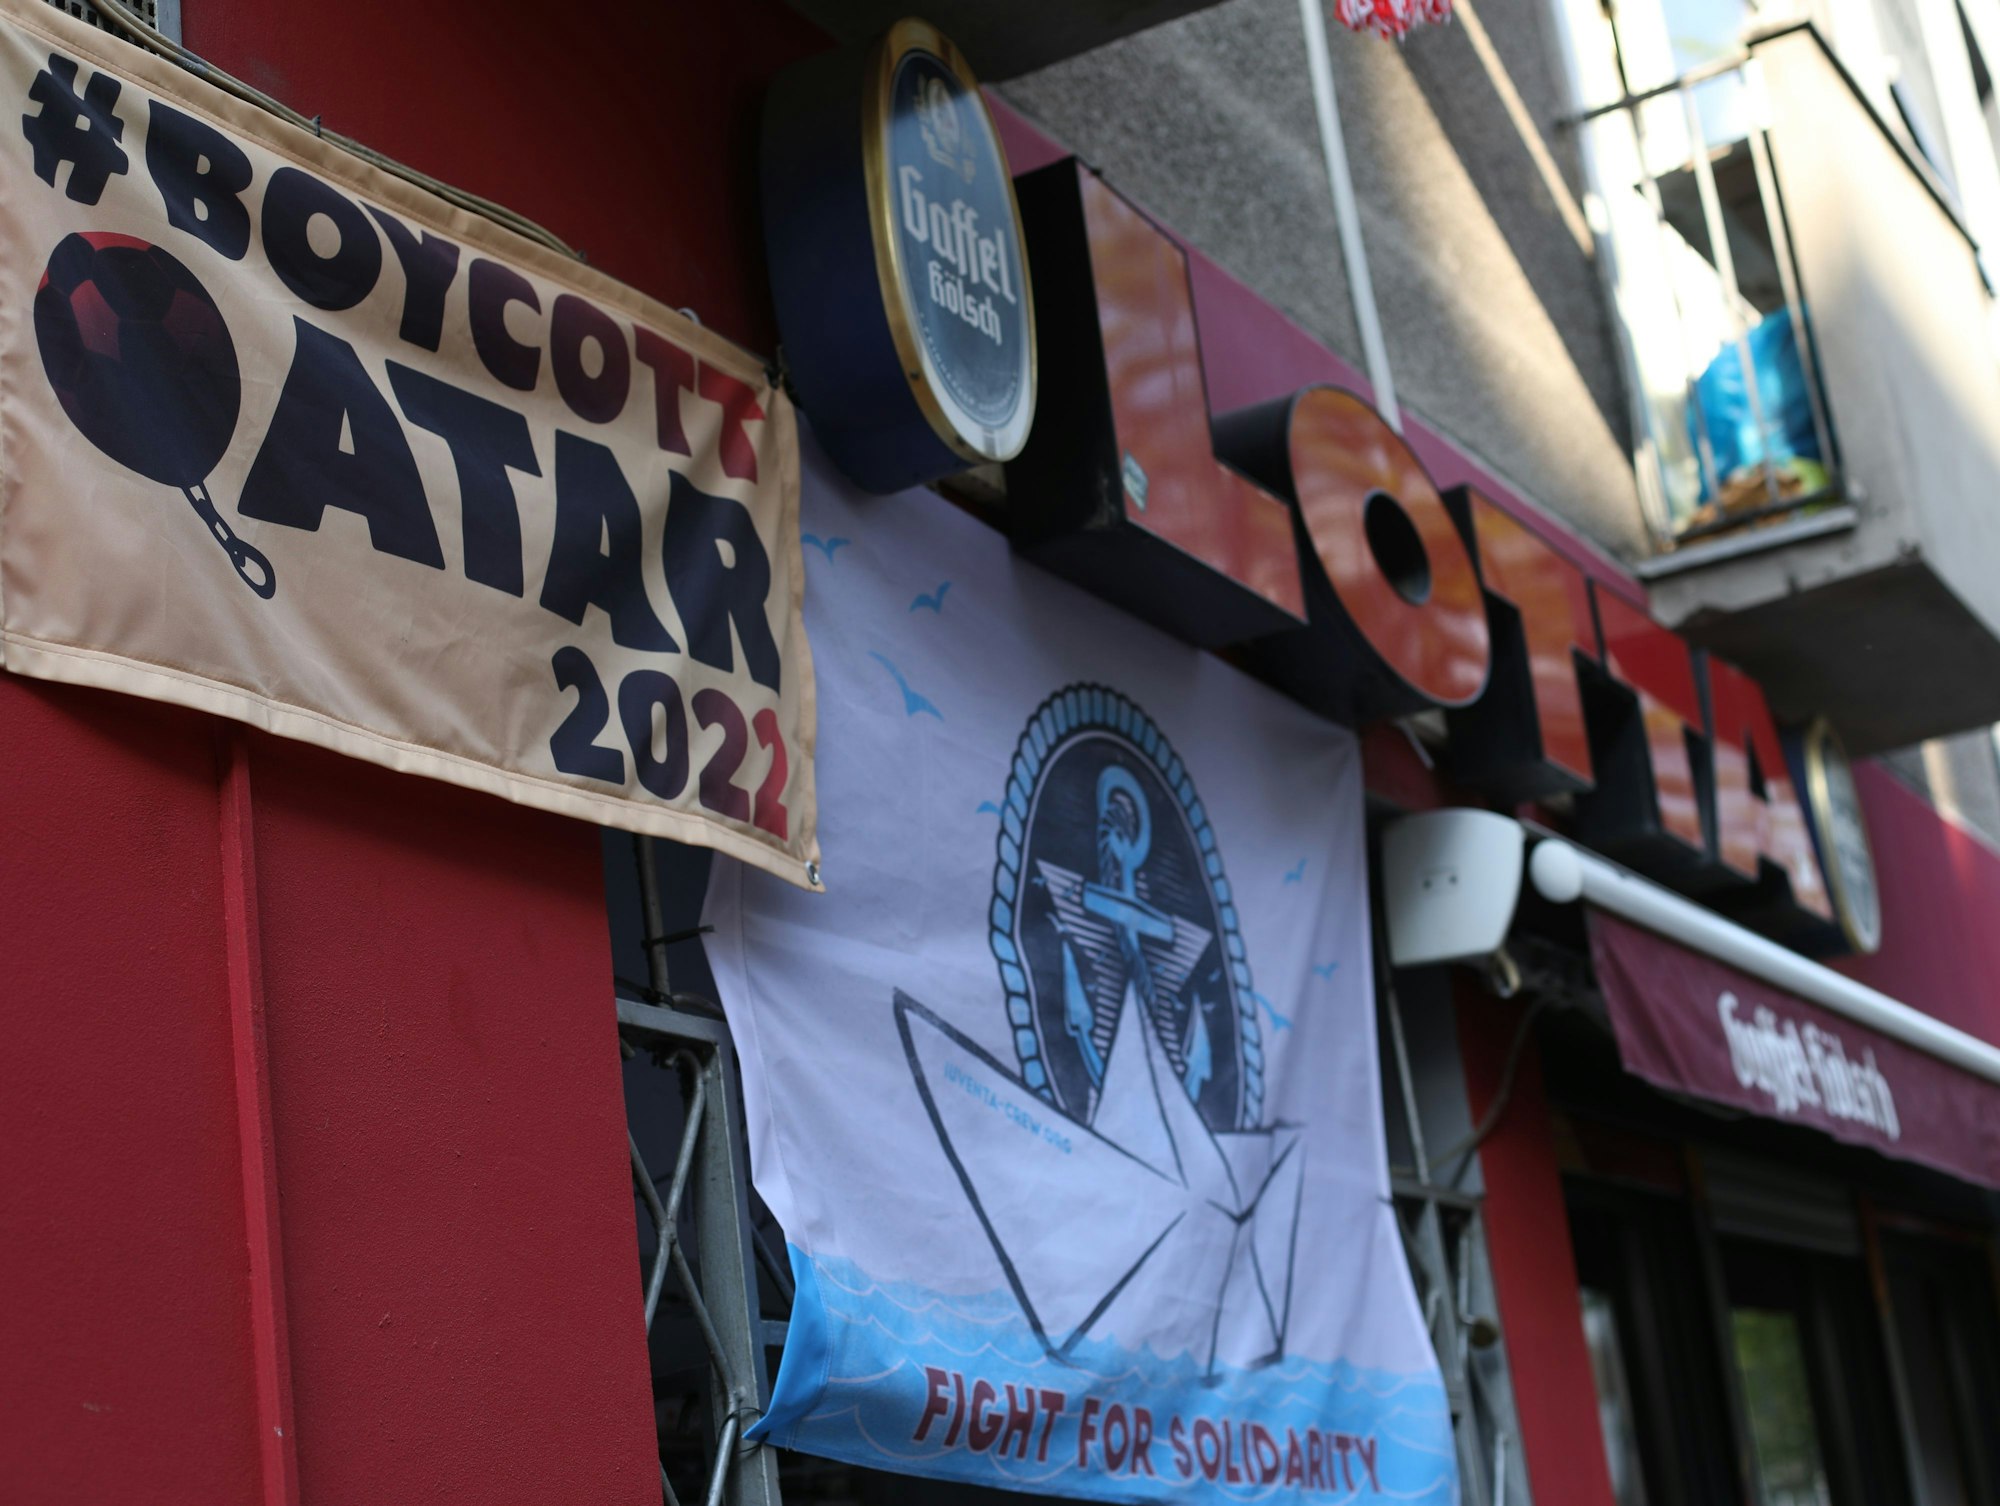 Über der Bar "Lotta" hängt ein Plakat mit dem Hinweis, dass die WM in Karar boykottiert wird.